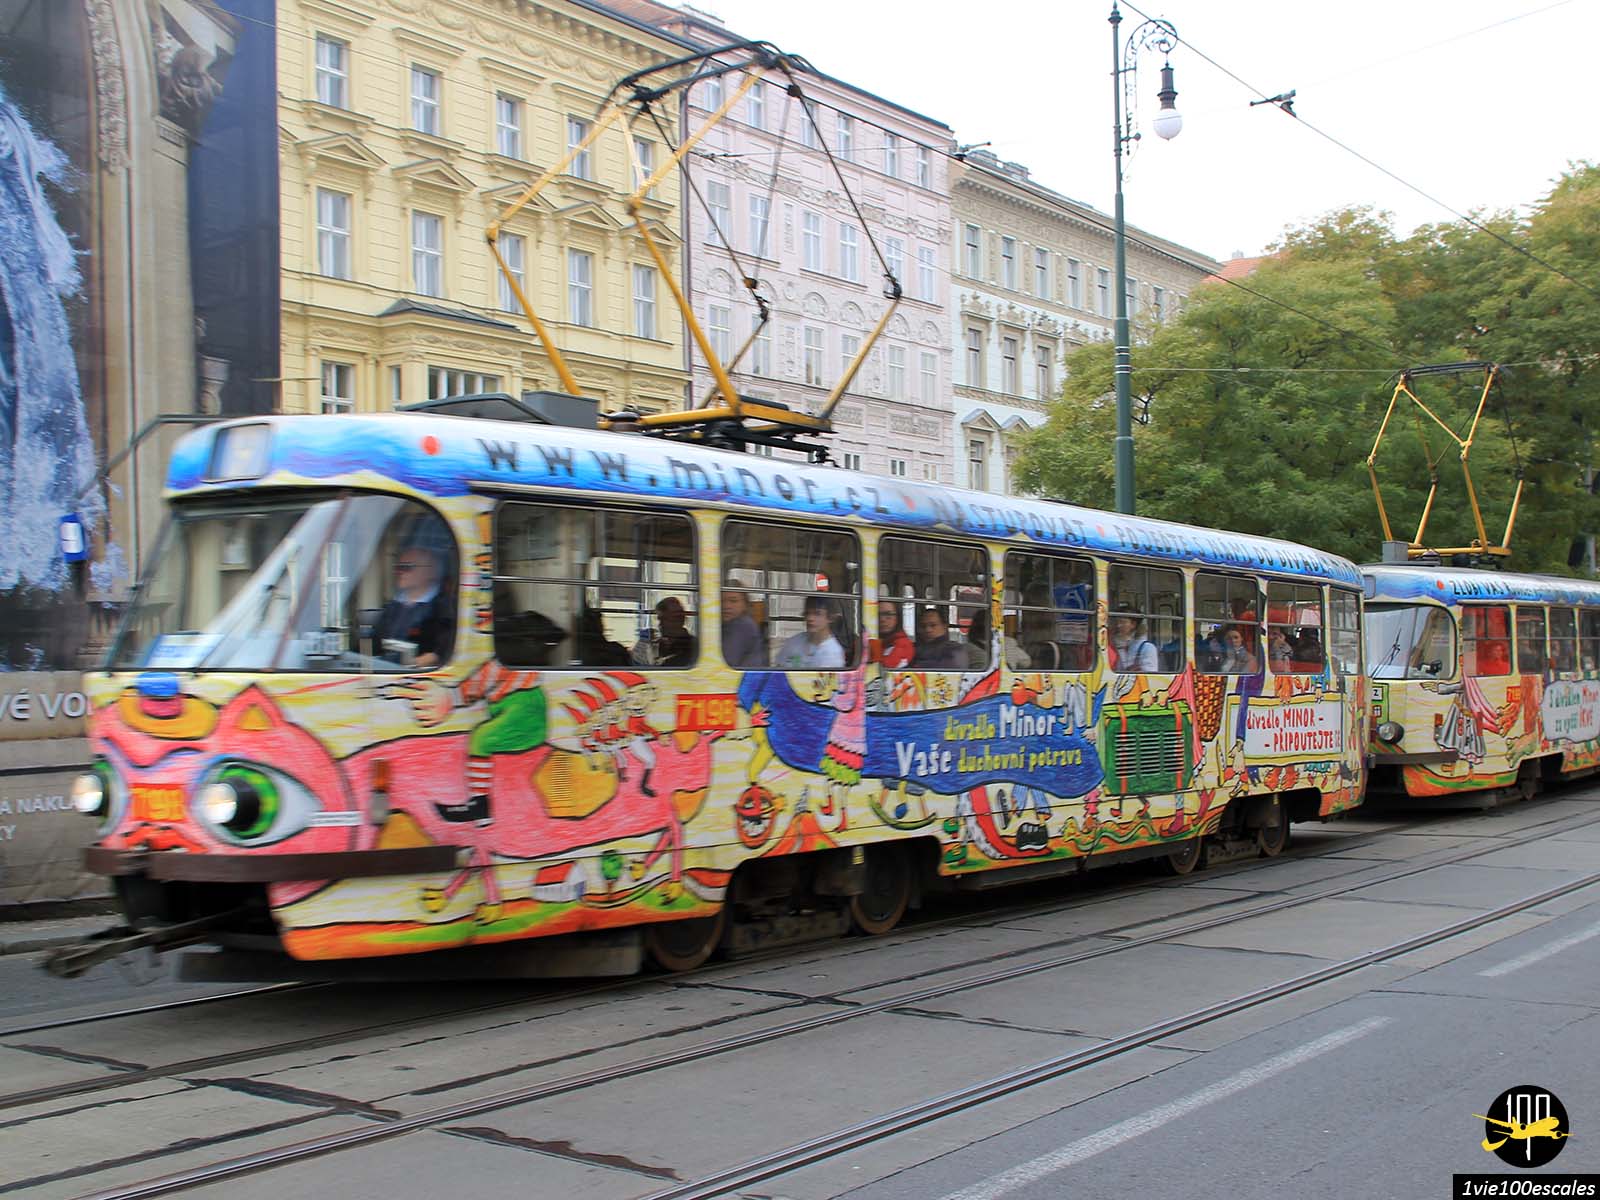 Le tramway de Prague rend la ville plus belle. Certains sont vieux, plus récente, rouge et blanc et décoré de différentes manières